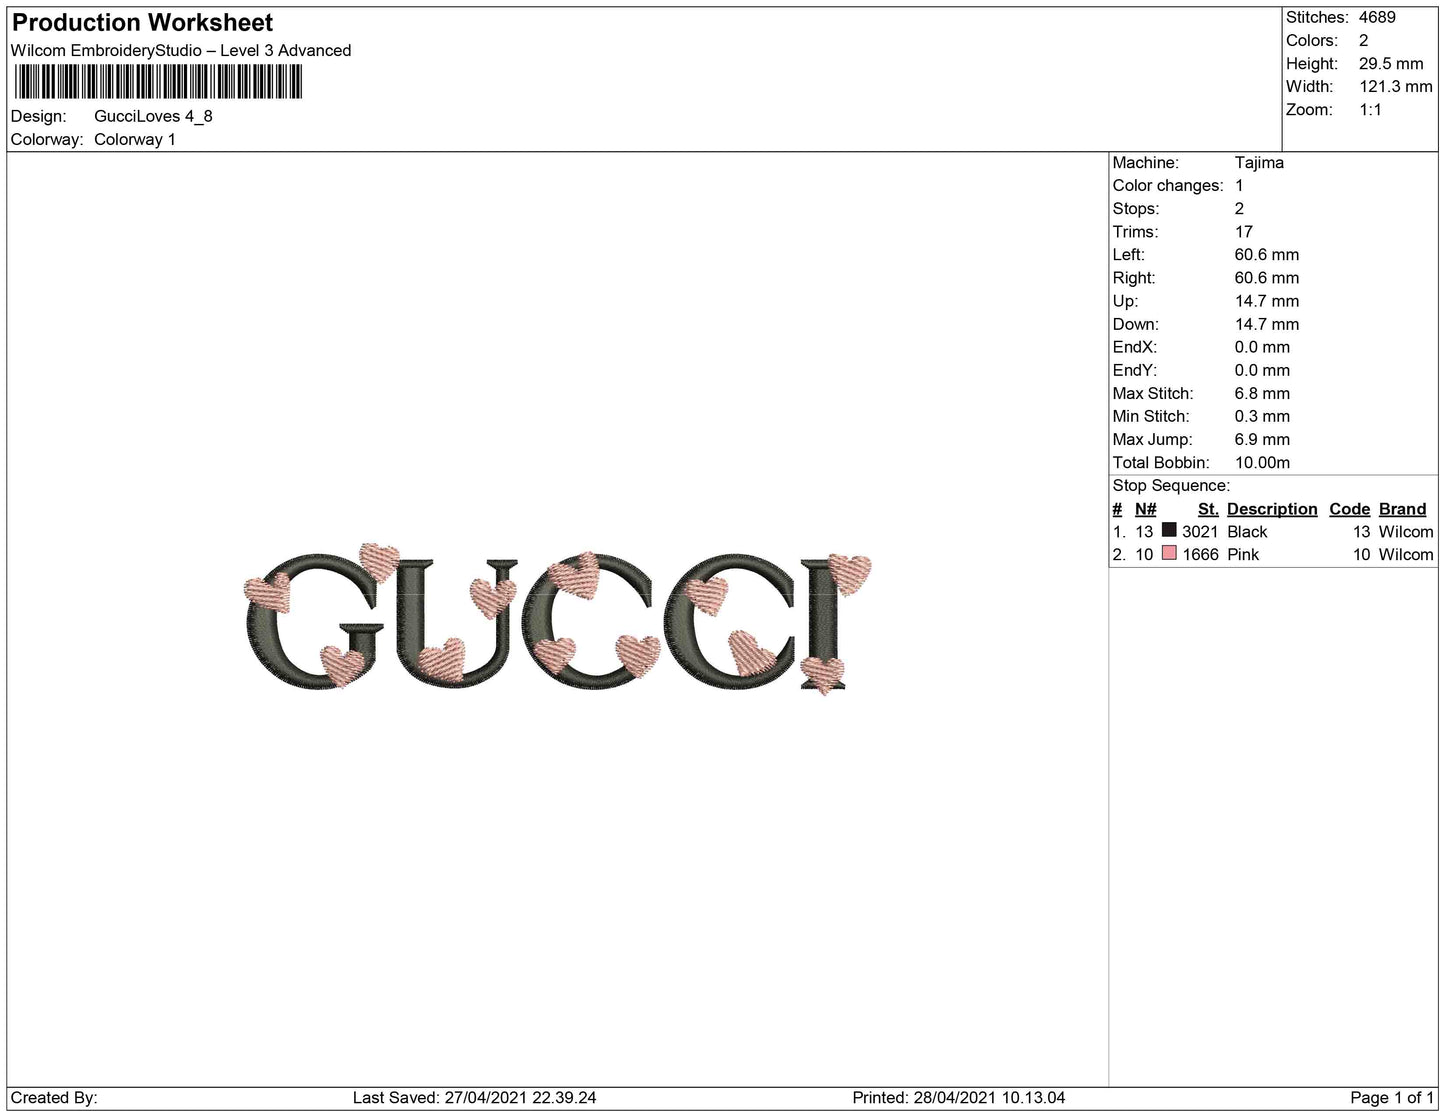 Gucci liebt